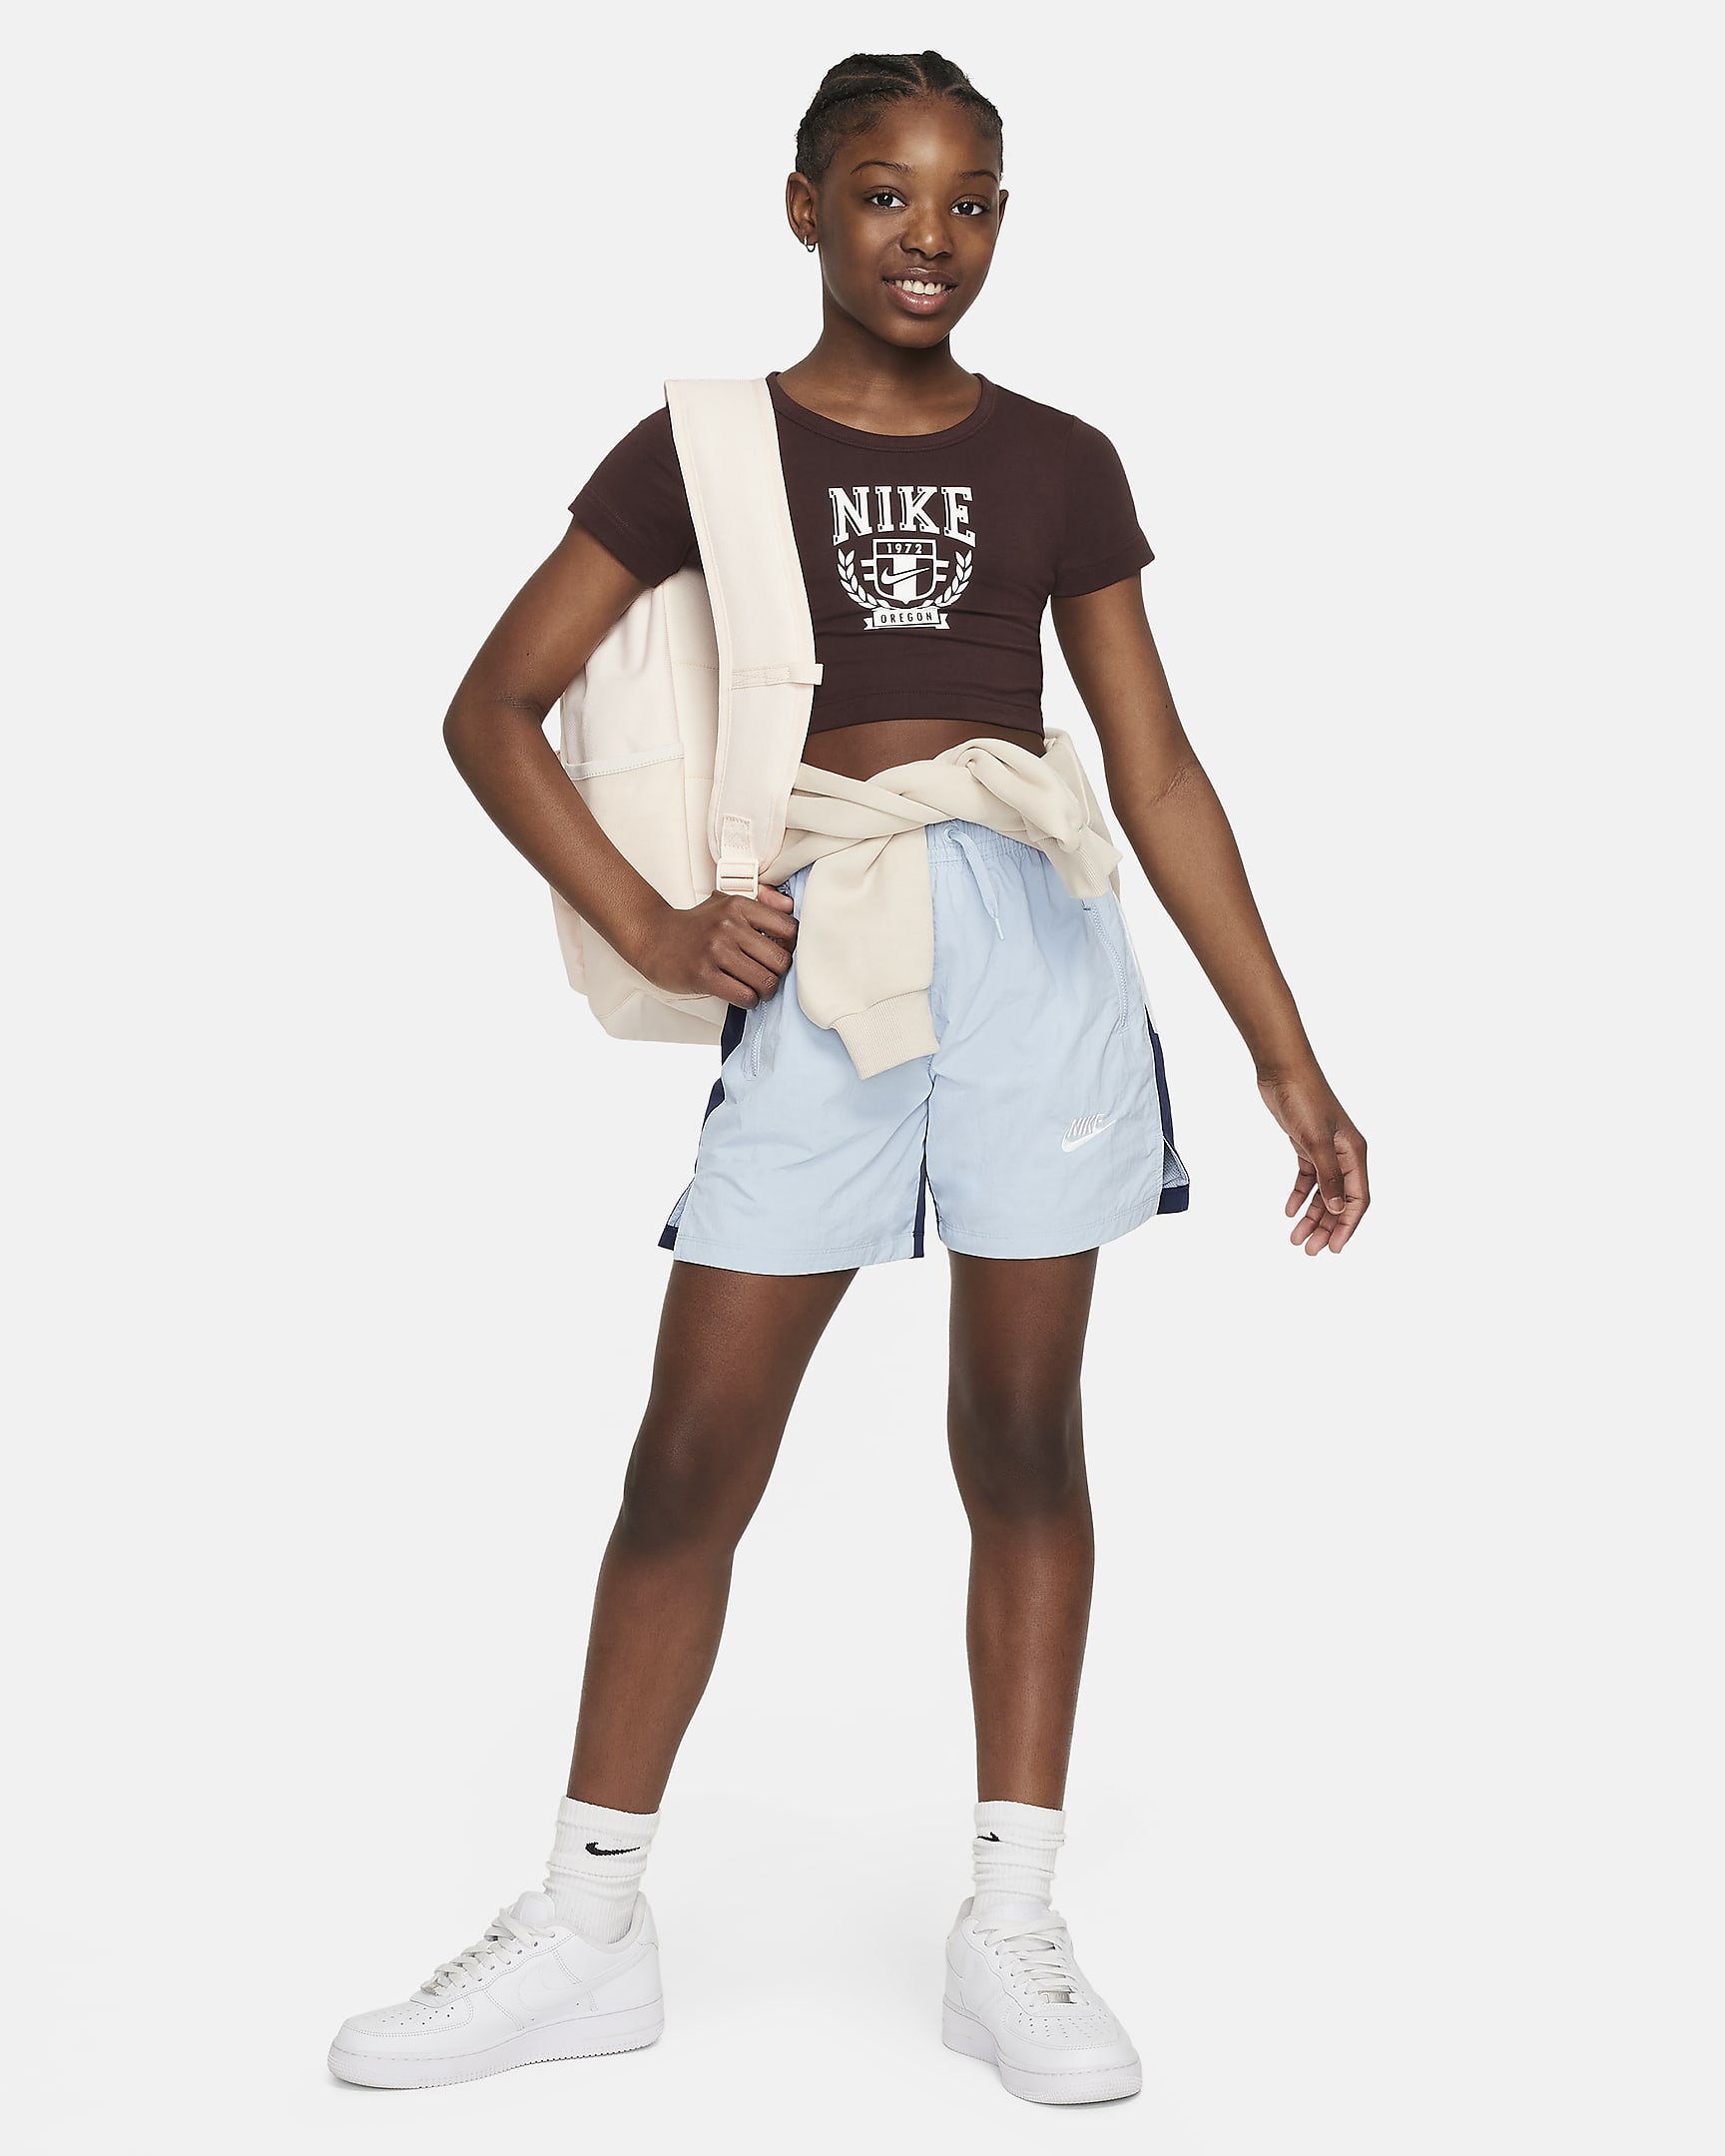 Nike Sportswear Older Kids' (Girls') Graphic T-Shirt. Nike AT